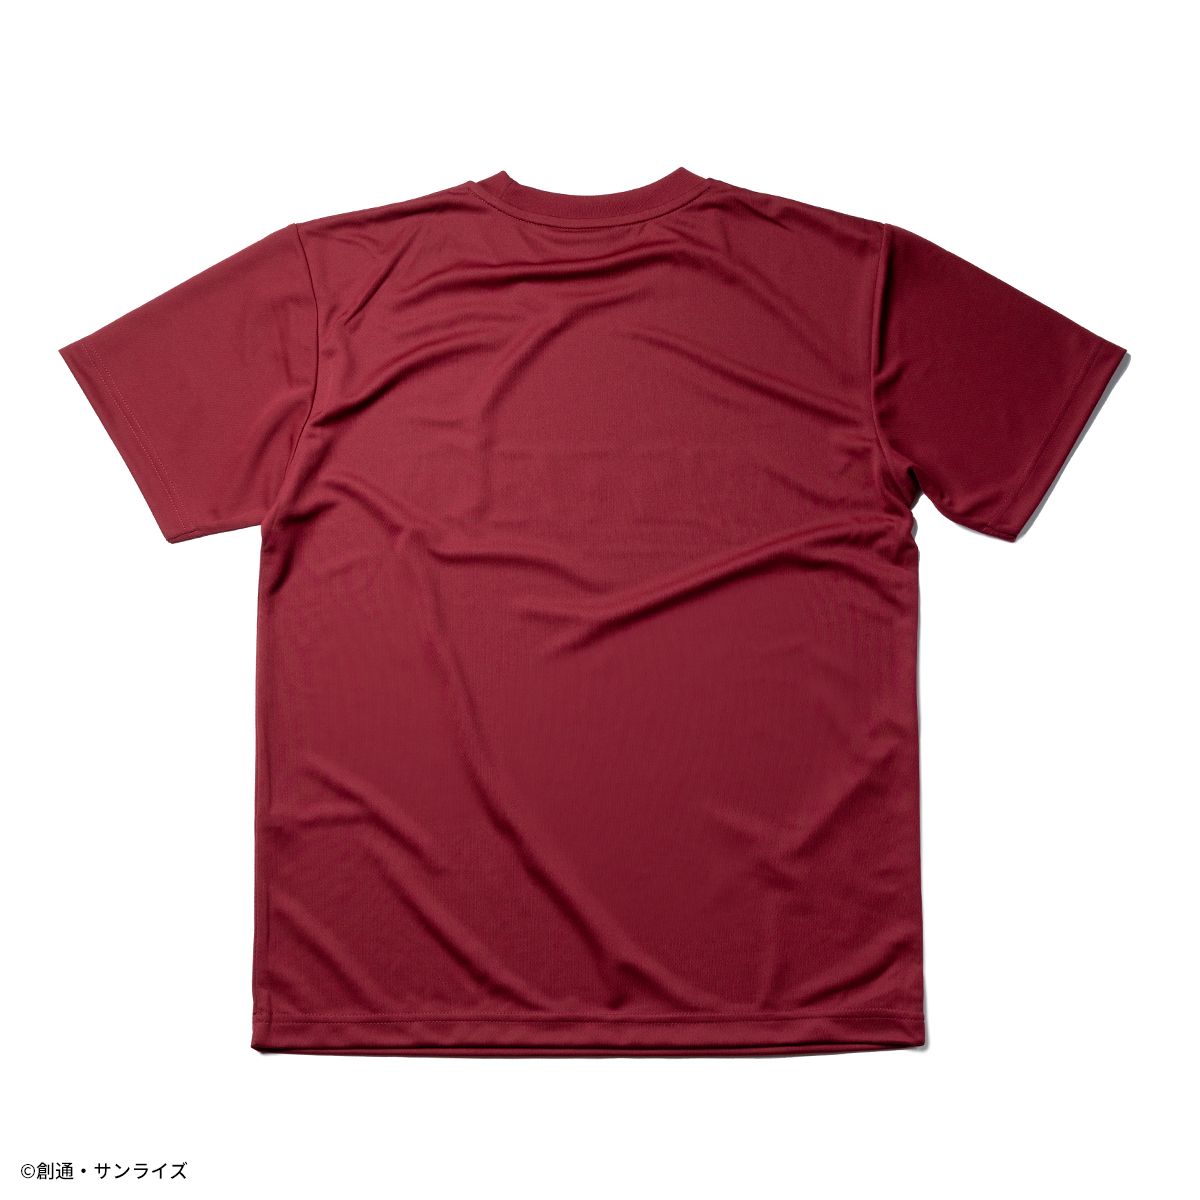 『機動戦士ガンダムSEED』より吸水速乾素材を使用したTシャツとショートパンツの新柄が登場!